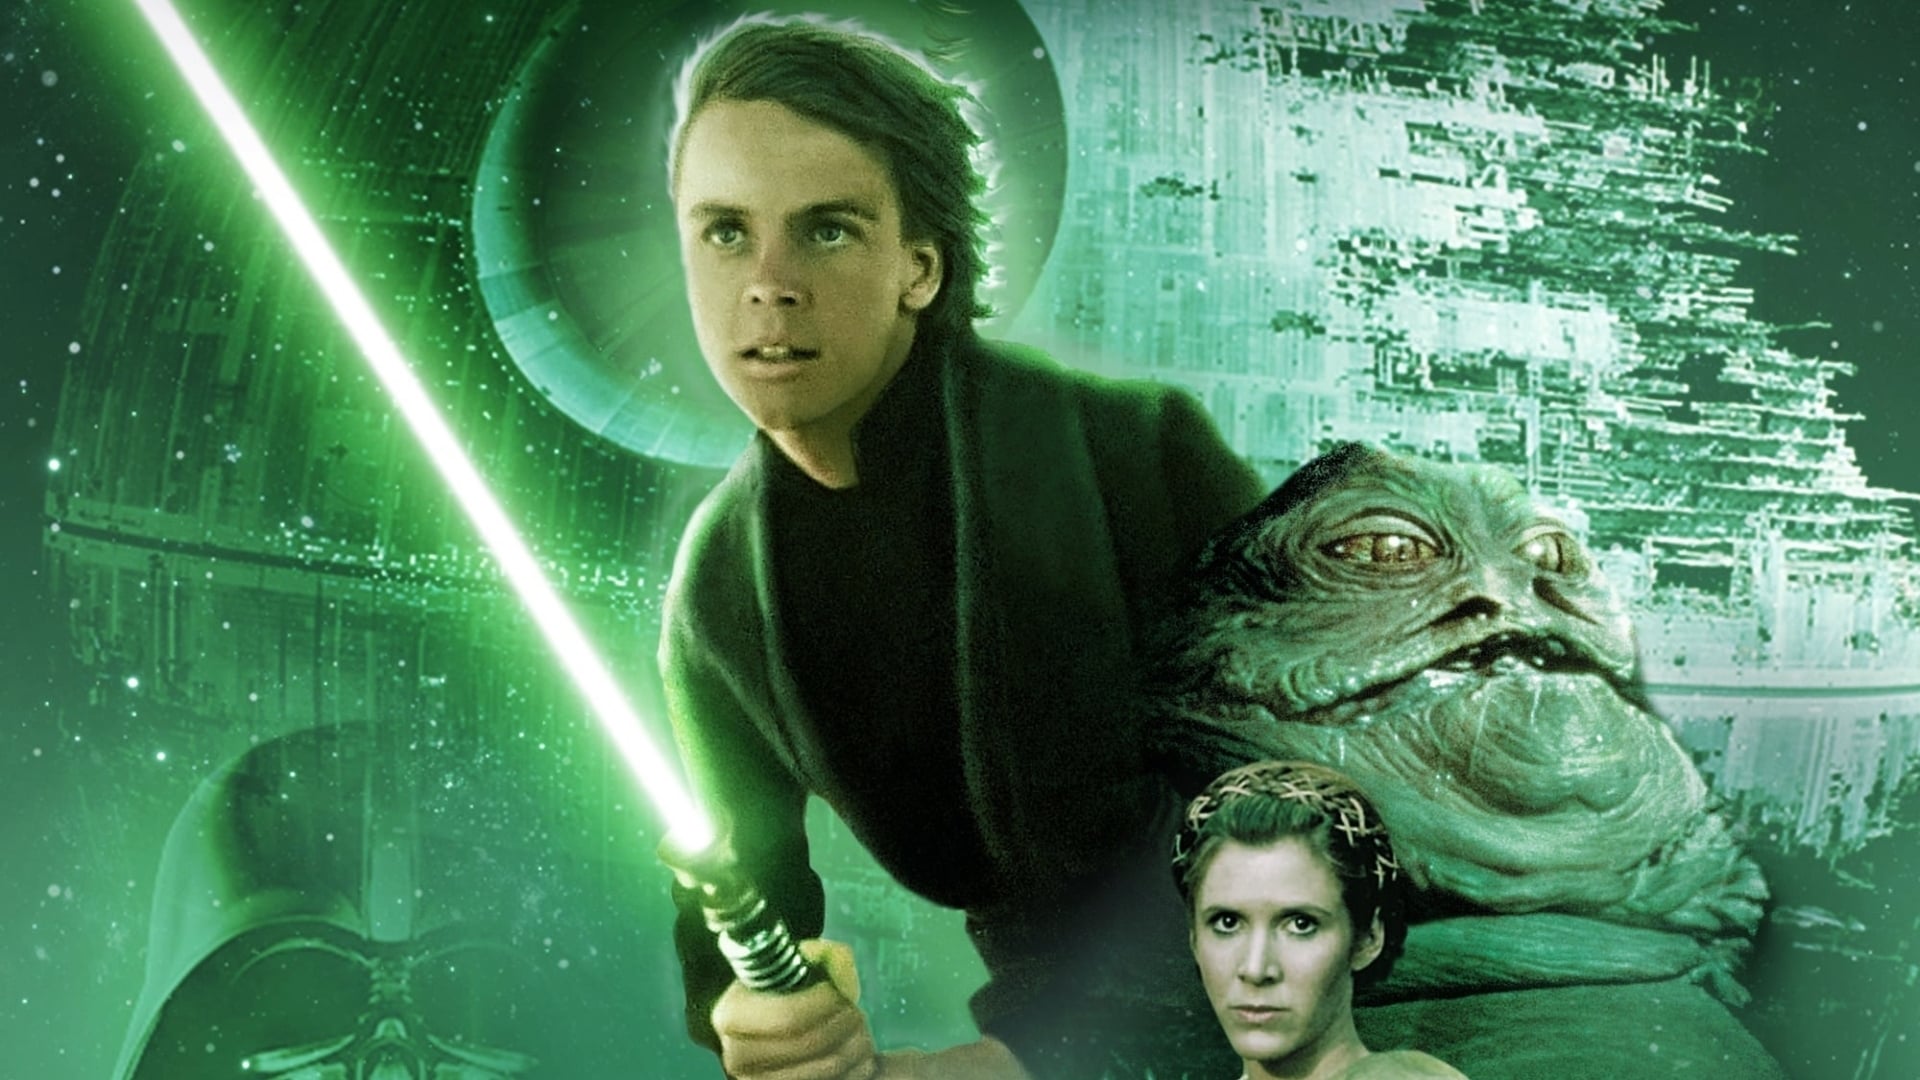 Image du film Star Wars, édition spéciale : le retour du Jedi 6lruremfj2zfz5u0bxp8pd7lmgejpg